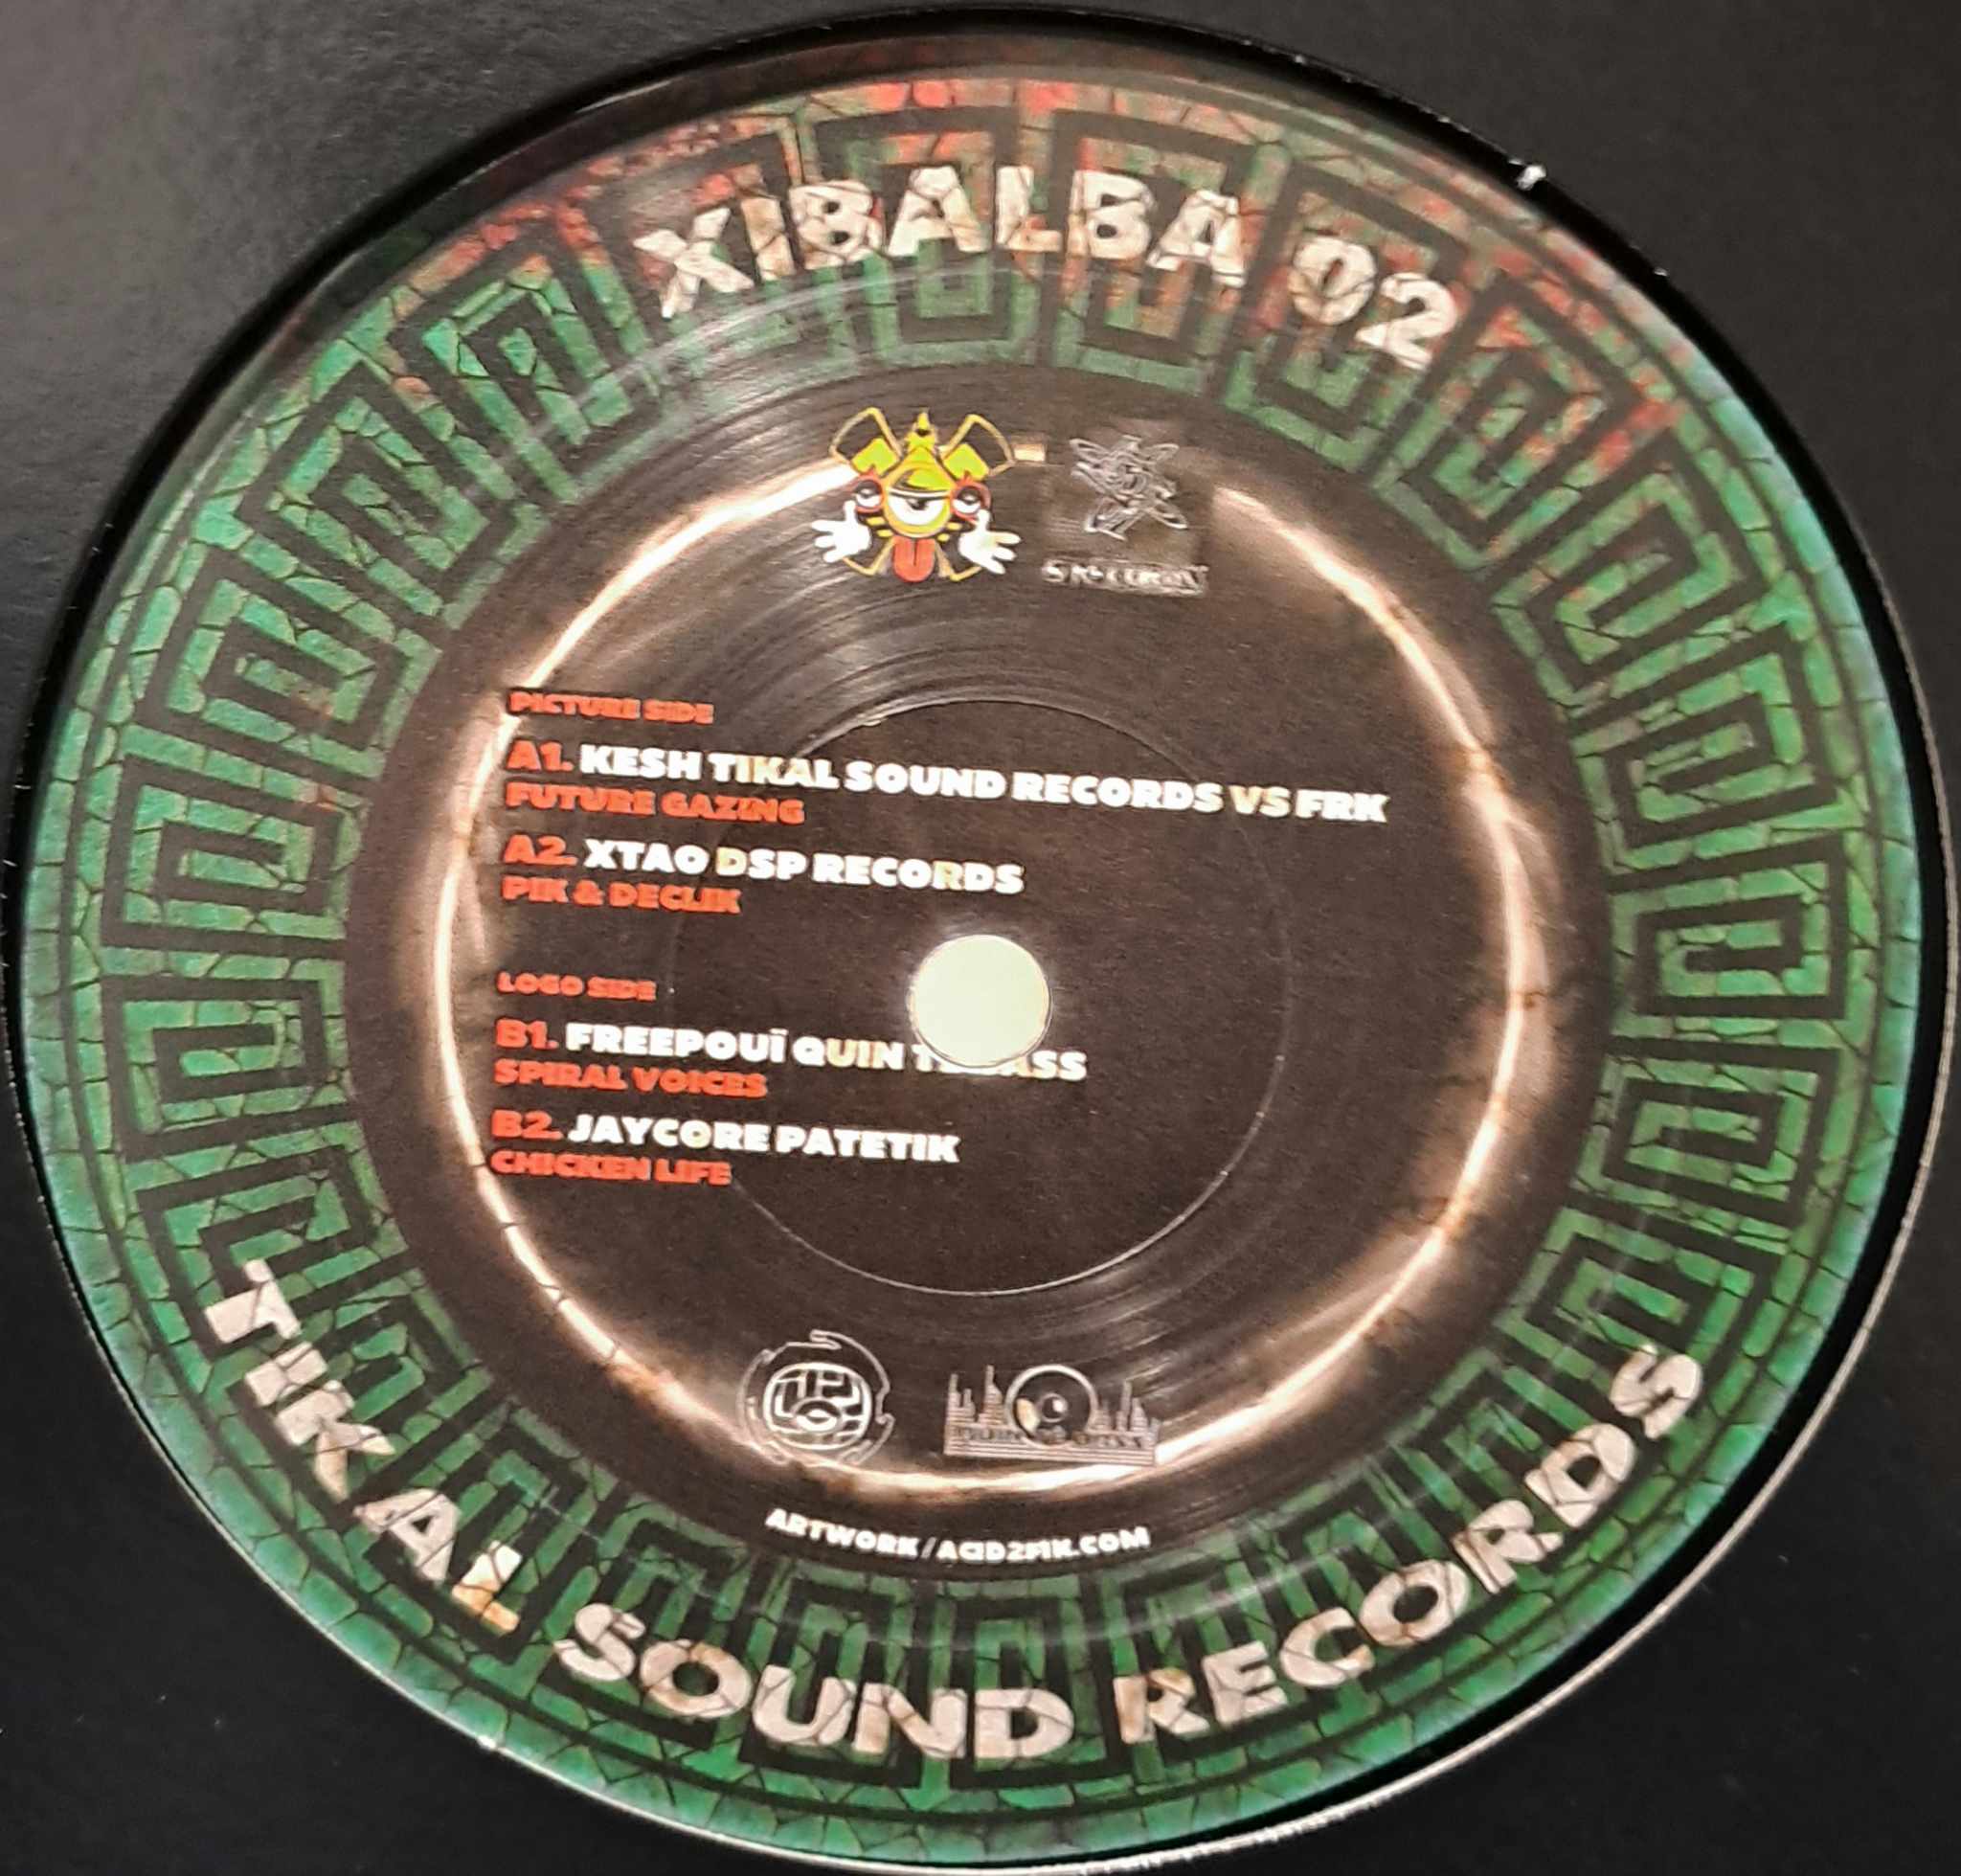 Xibalba 02 - vinyle freetekno